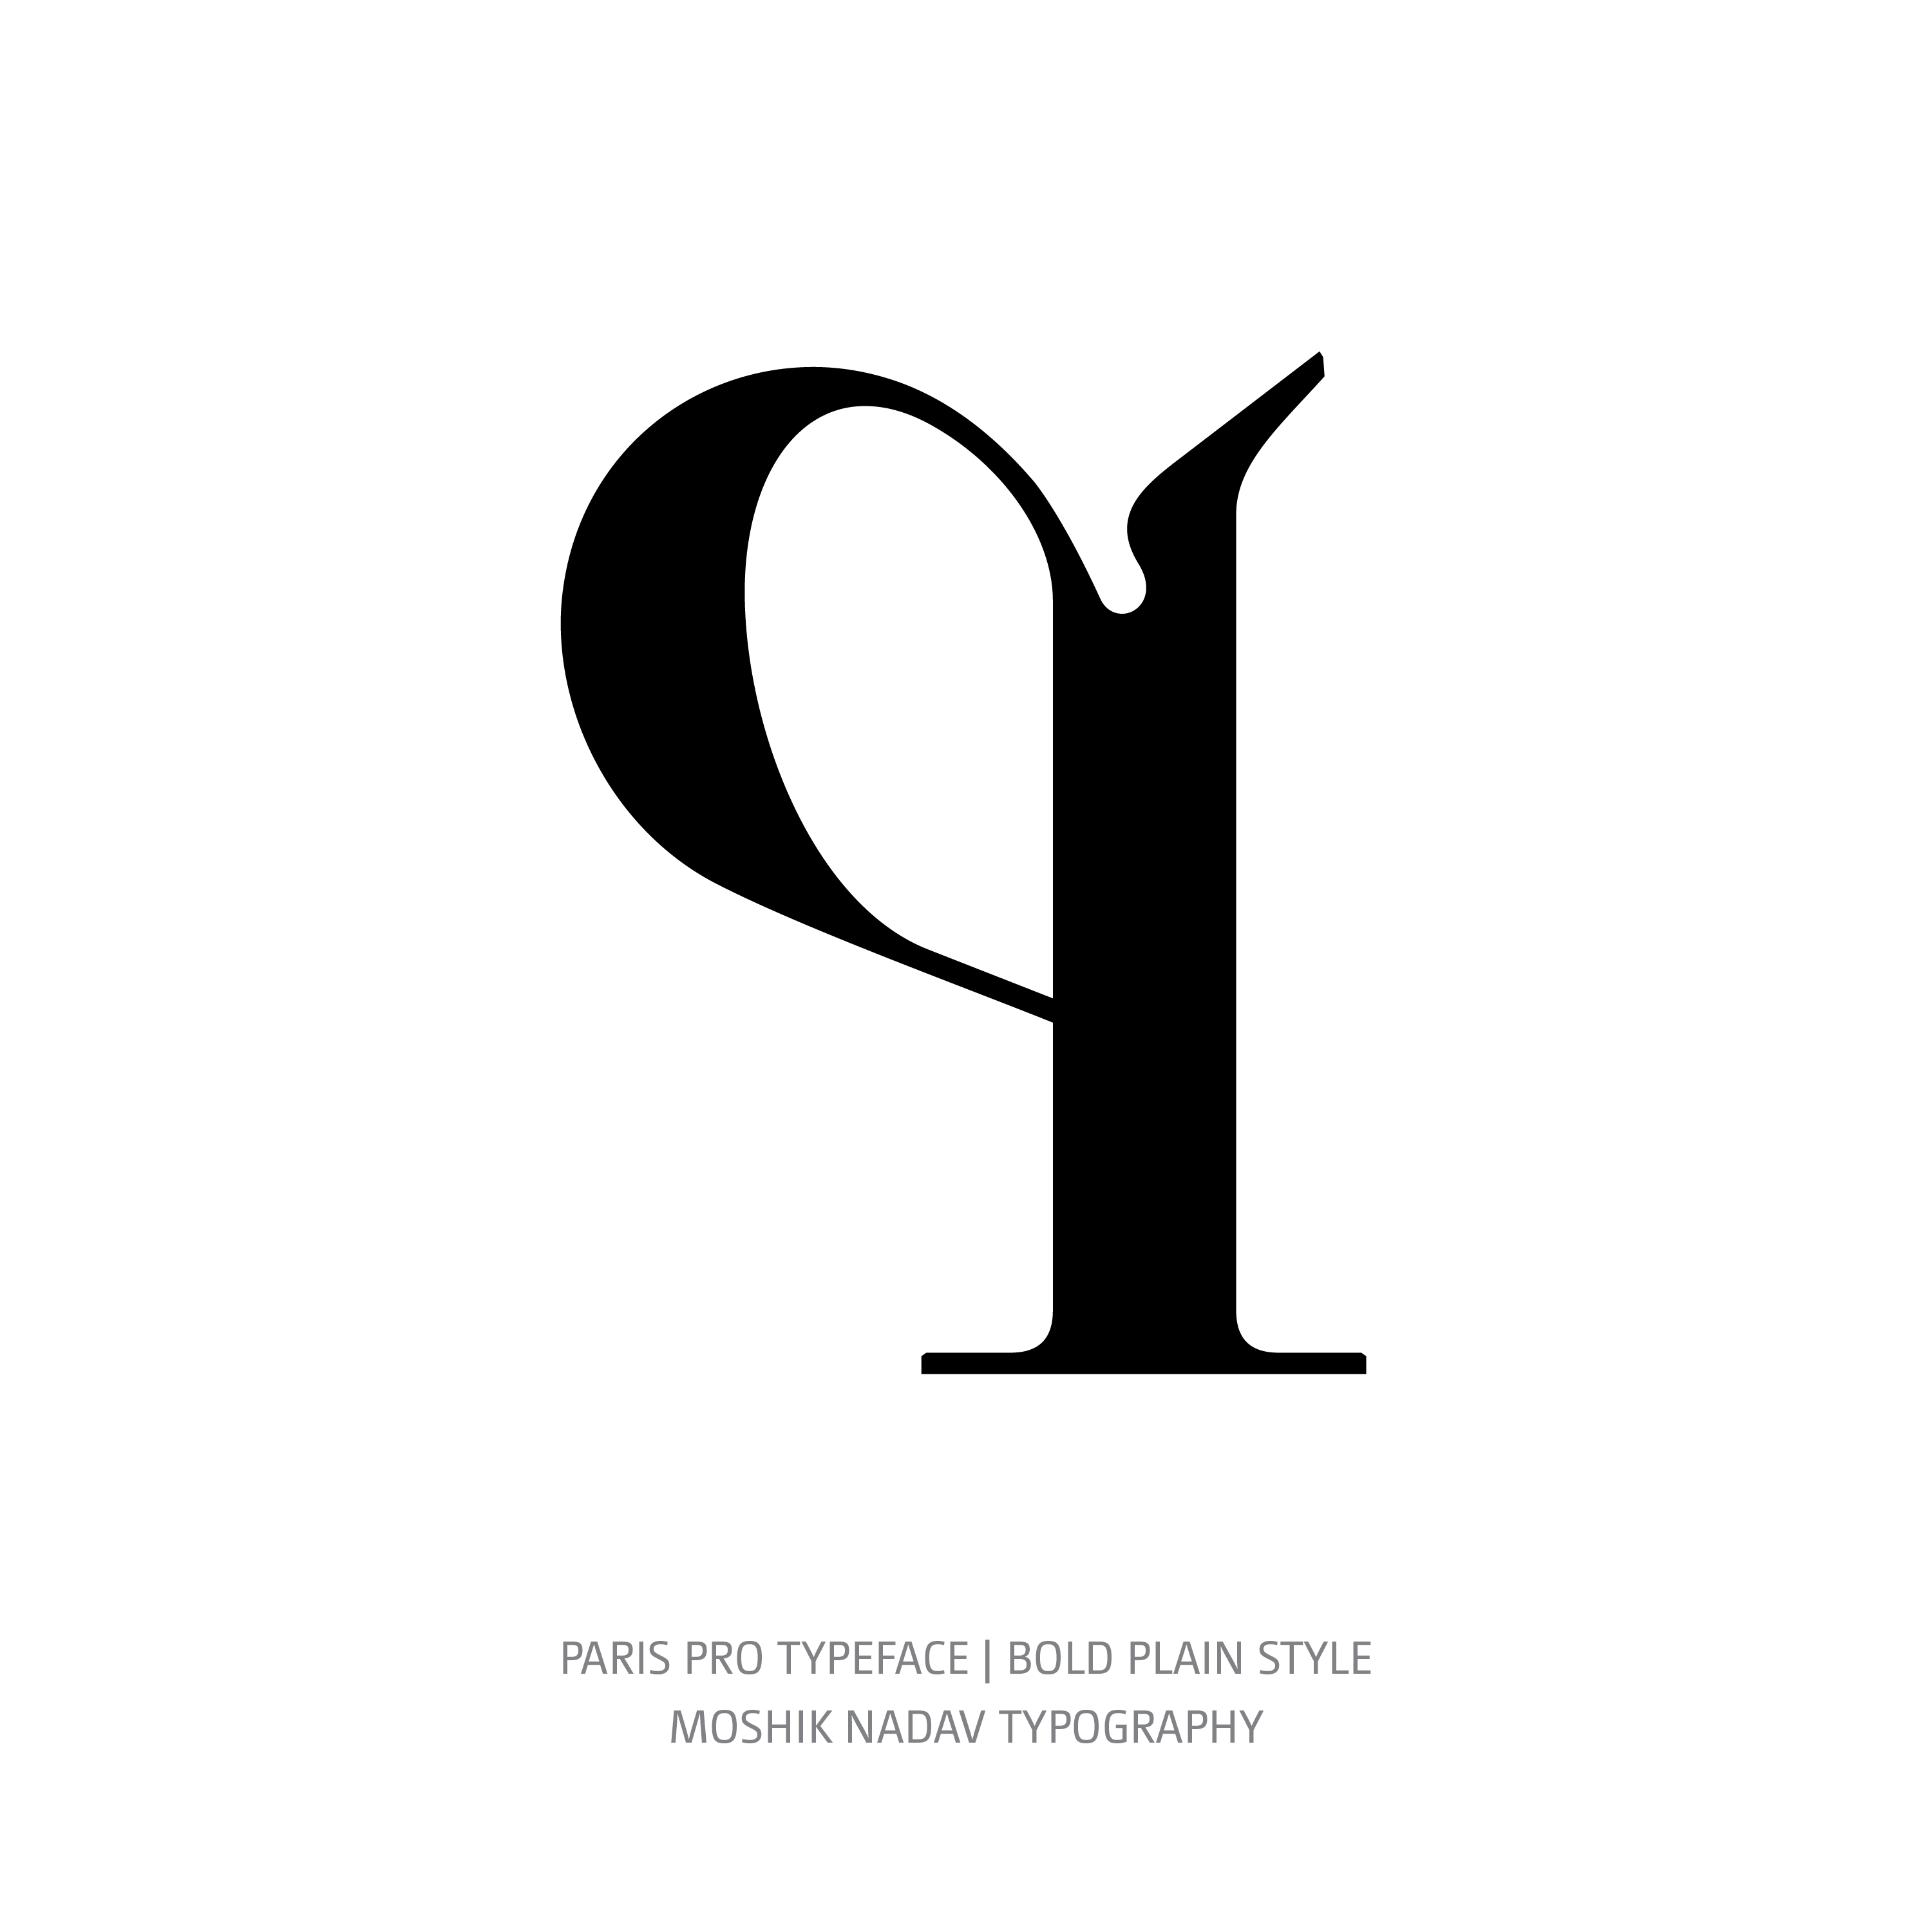 Paris Pro Typeface Bold Plain q